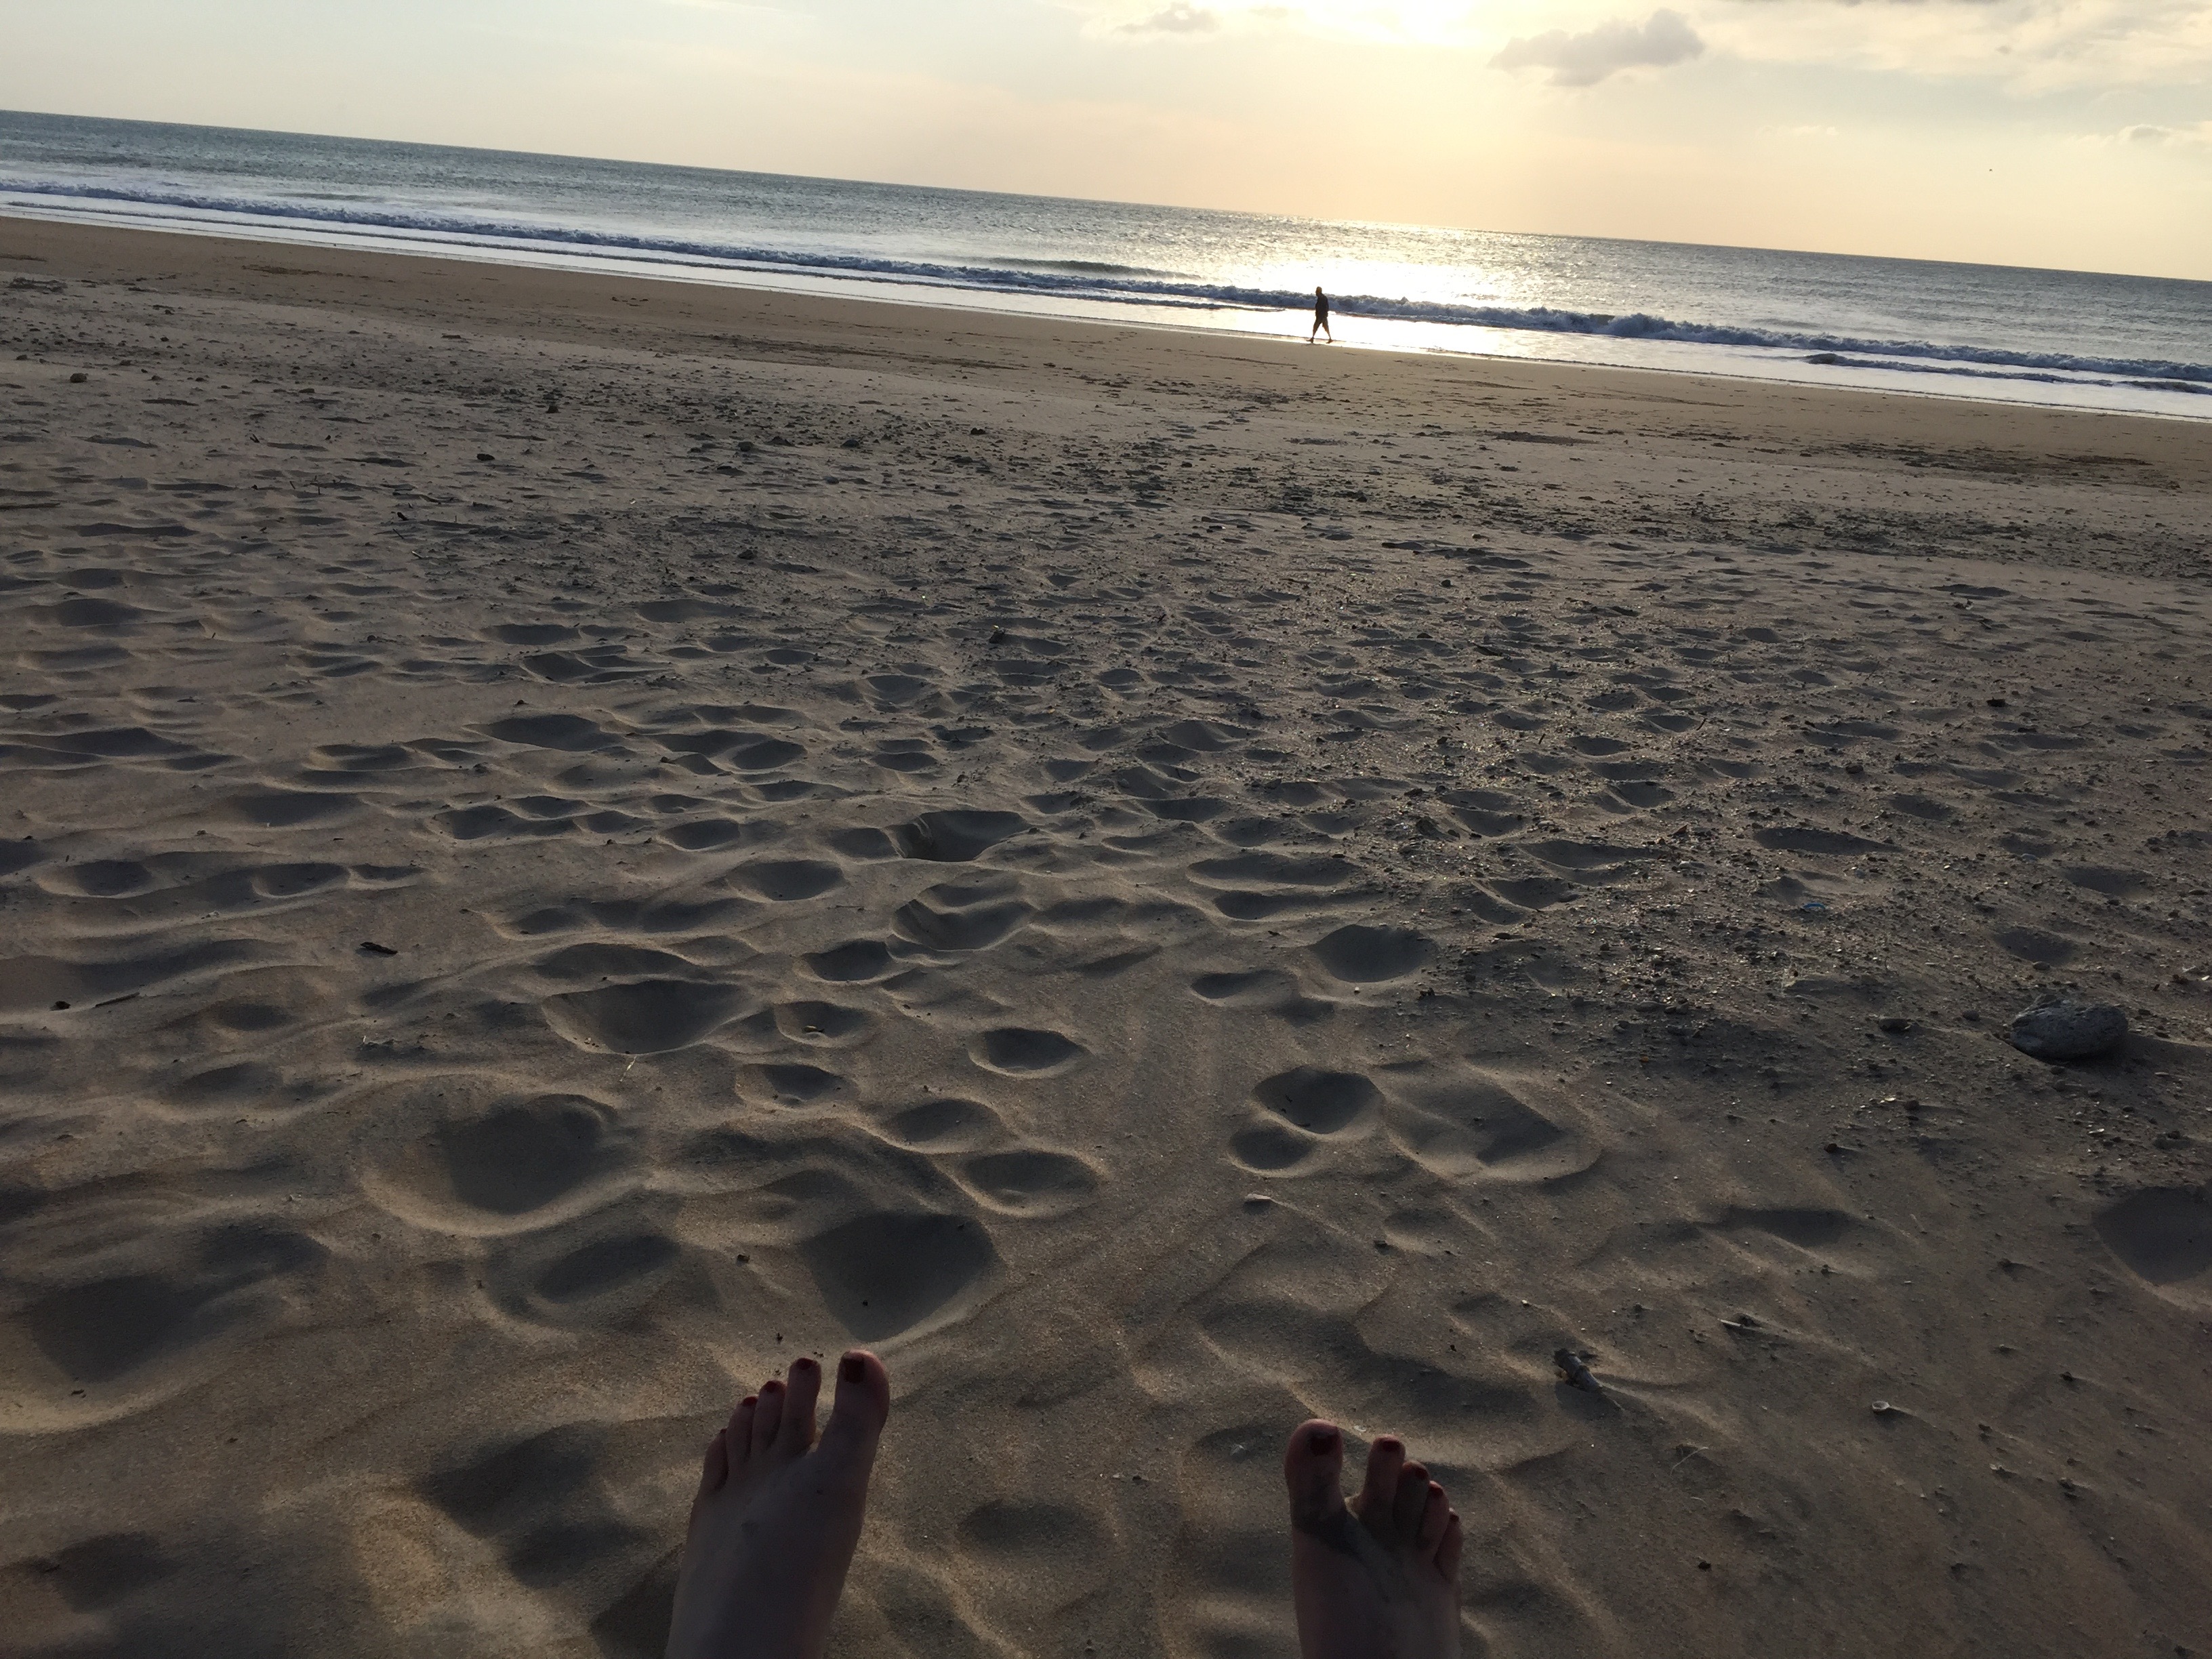 Füße in den warmen Sand und der Sonne beim Untergehen zusehen. Mein Traum...